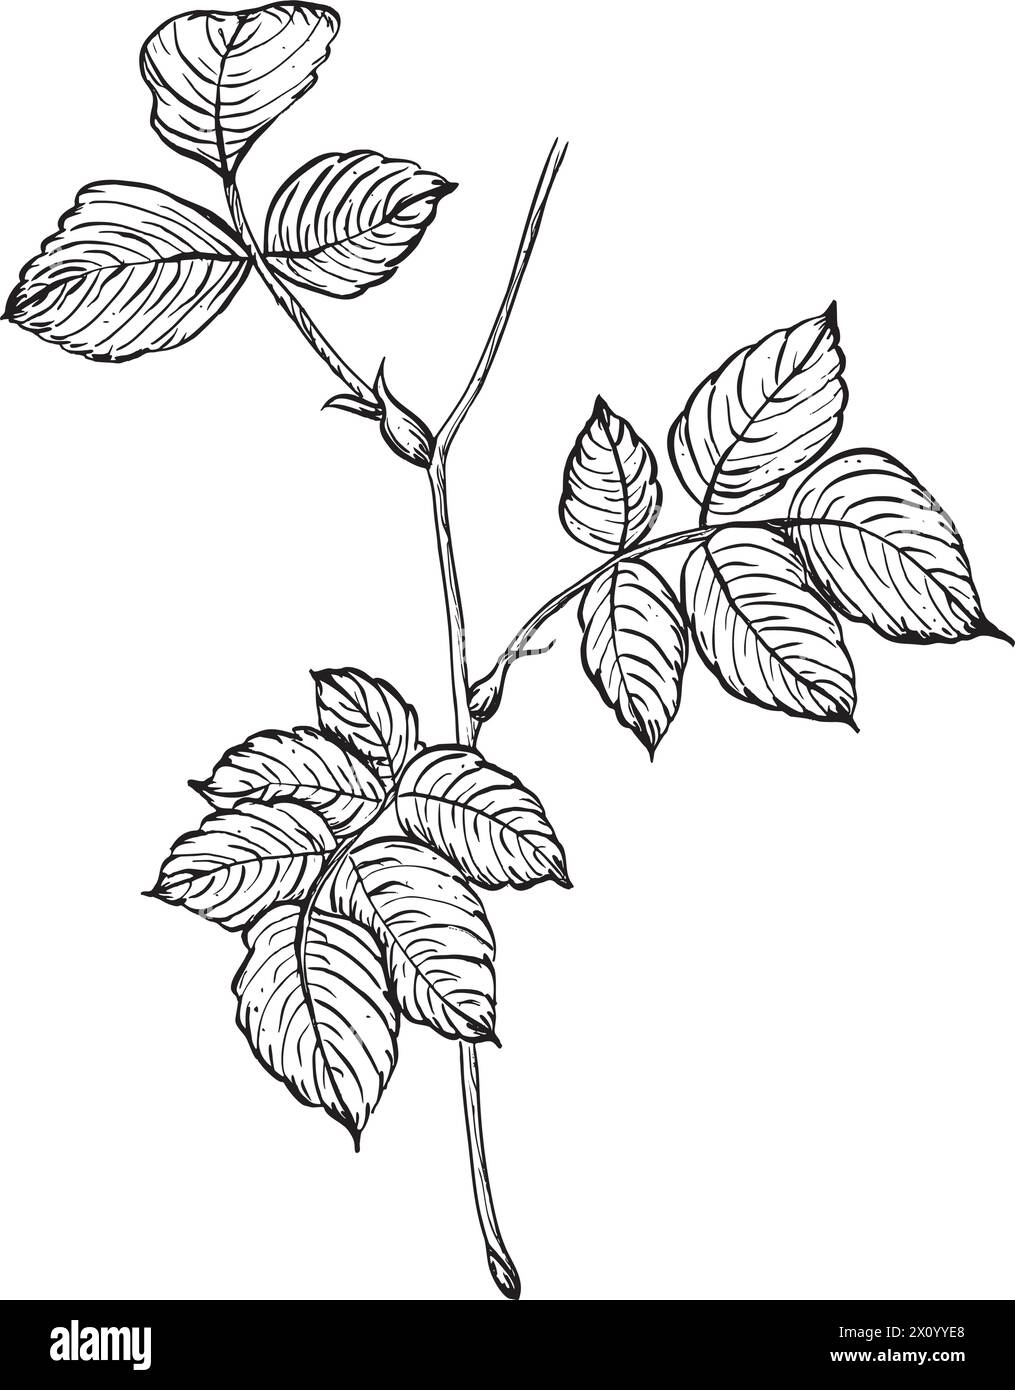 Zweig einer wilden Rose mit Blättern. Vektor Hand gezeichnete florale Illustration von Rose Hüftblatt im Umrissstil. Skizzieren Sie in Schwarzweiß auf isolierten Stock Vektor